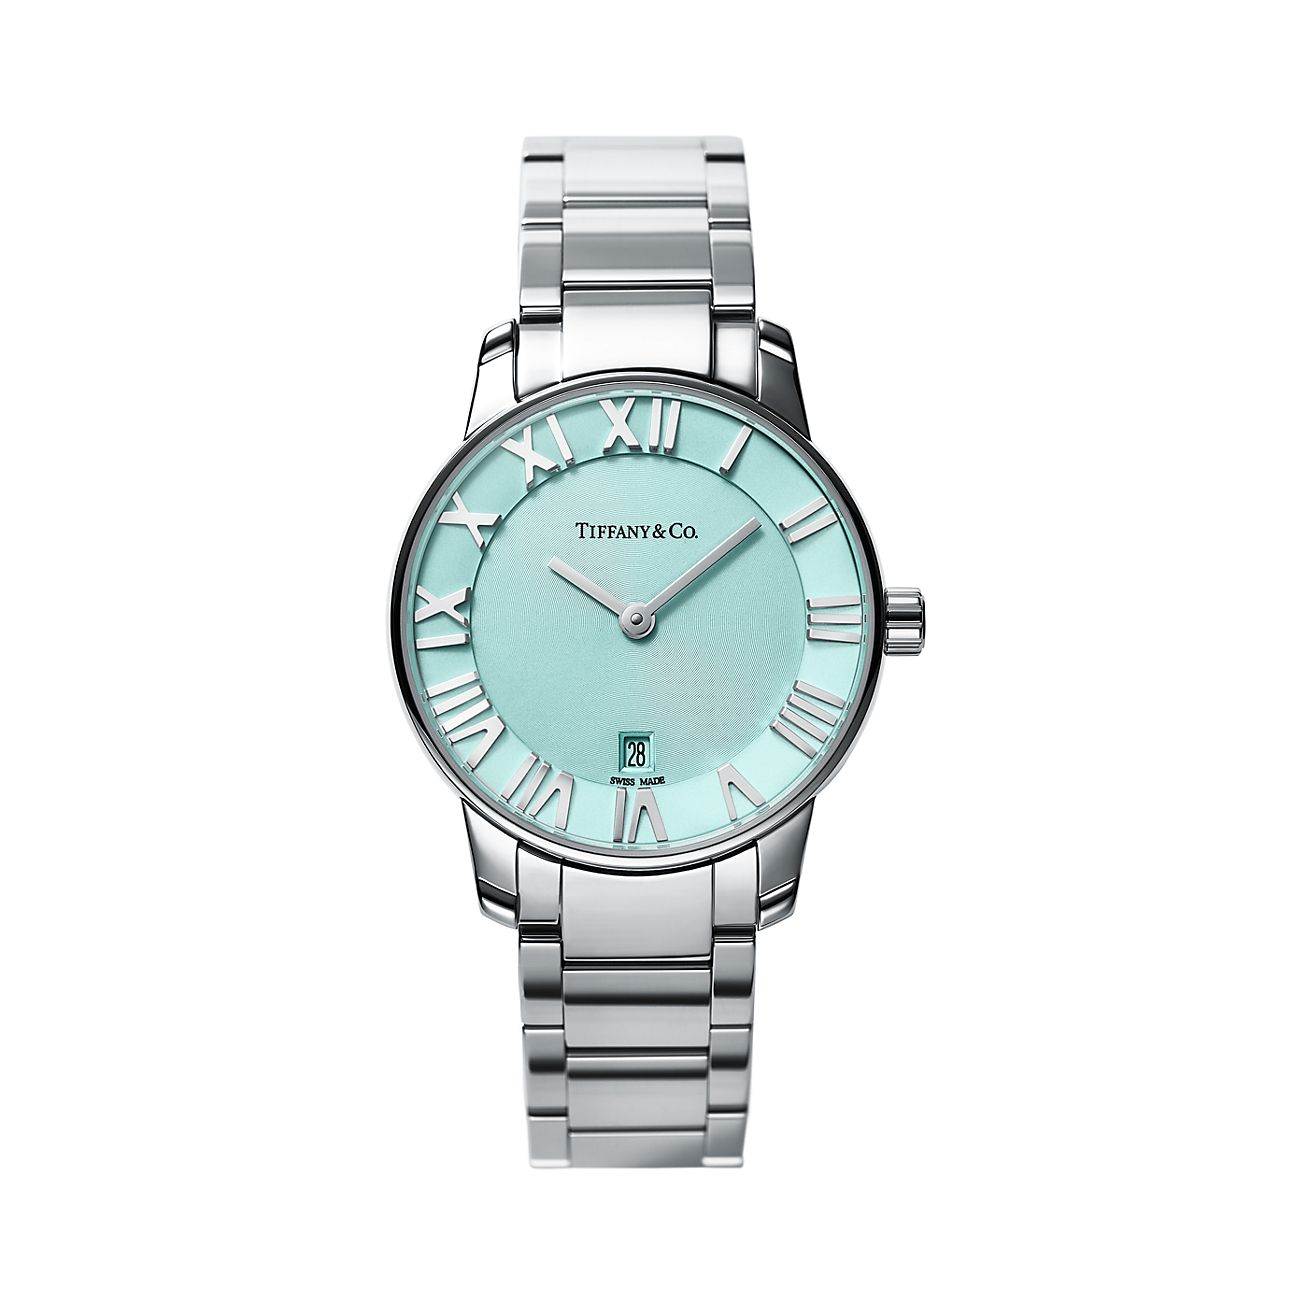 Atlas® 2-Hand 29 mm women's watch in stainless steel. | Tiffany & Co.